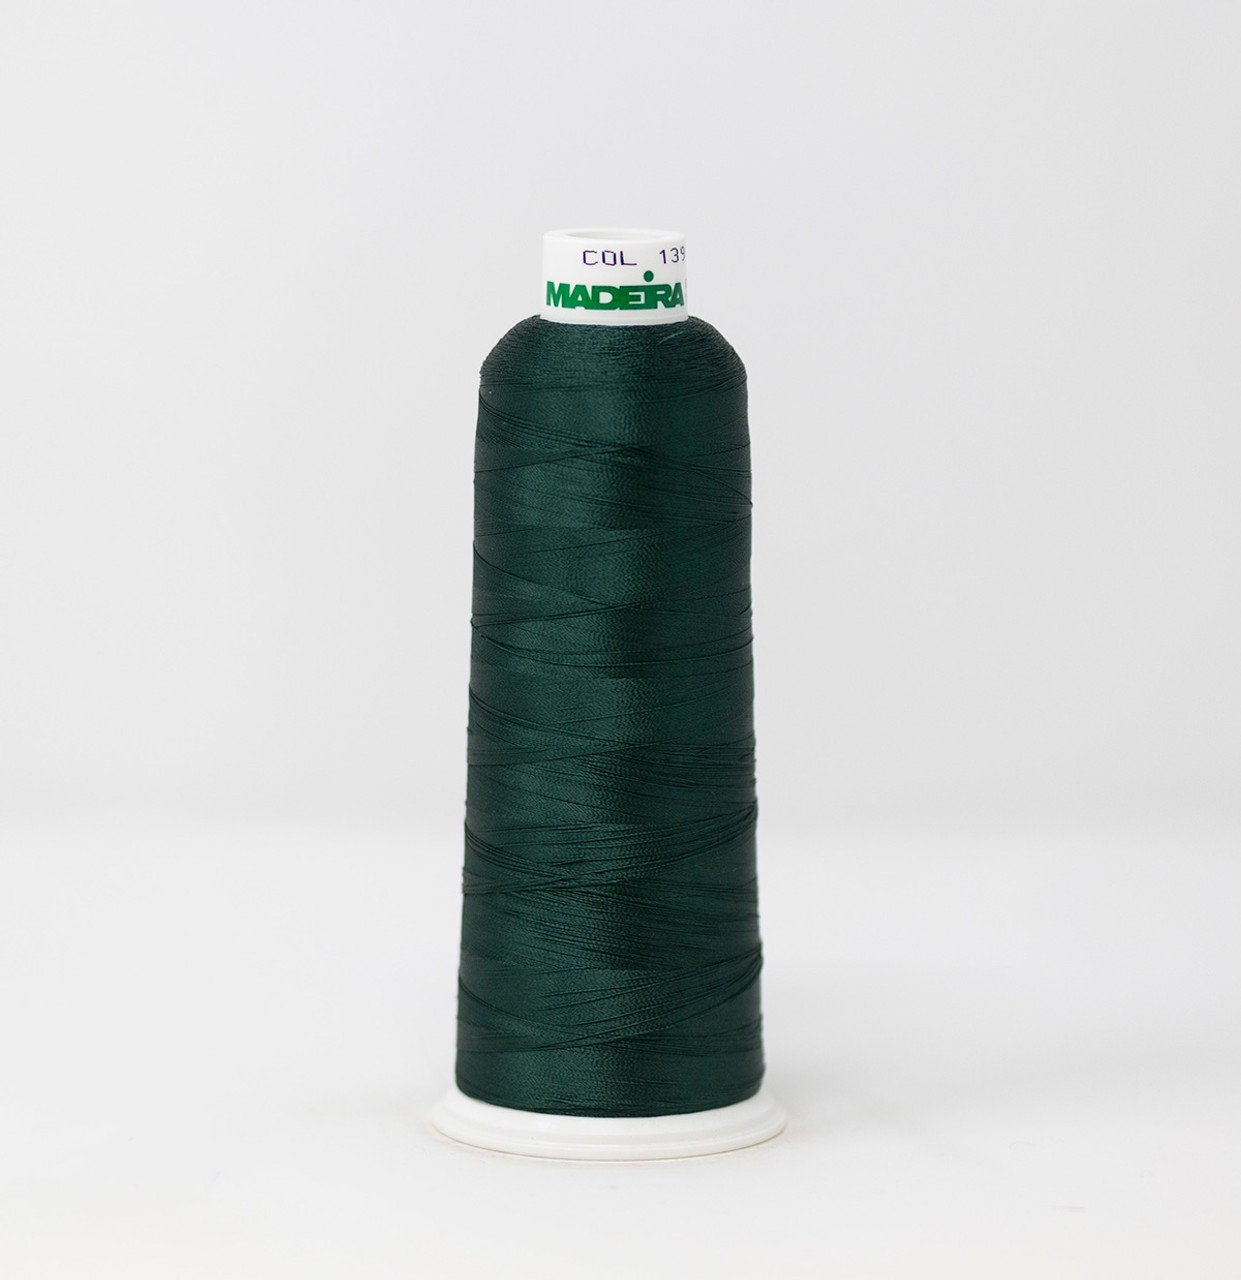 Buy Gore Tenara HTR Thread #M1003HTR-FG-5 Size 138 Forest Green 8-oz